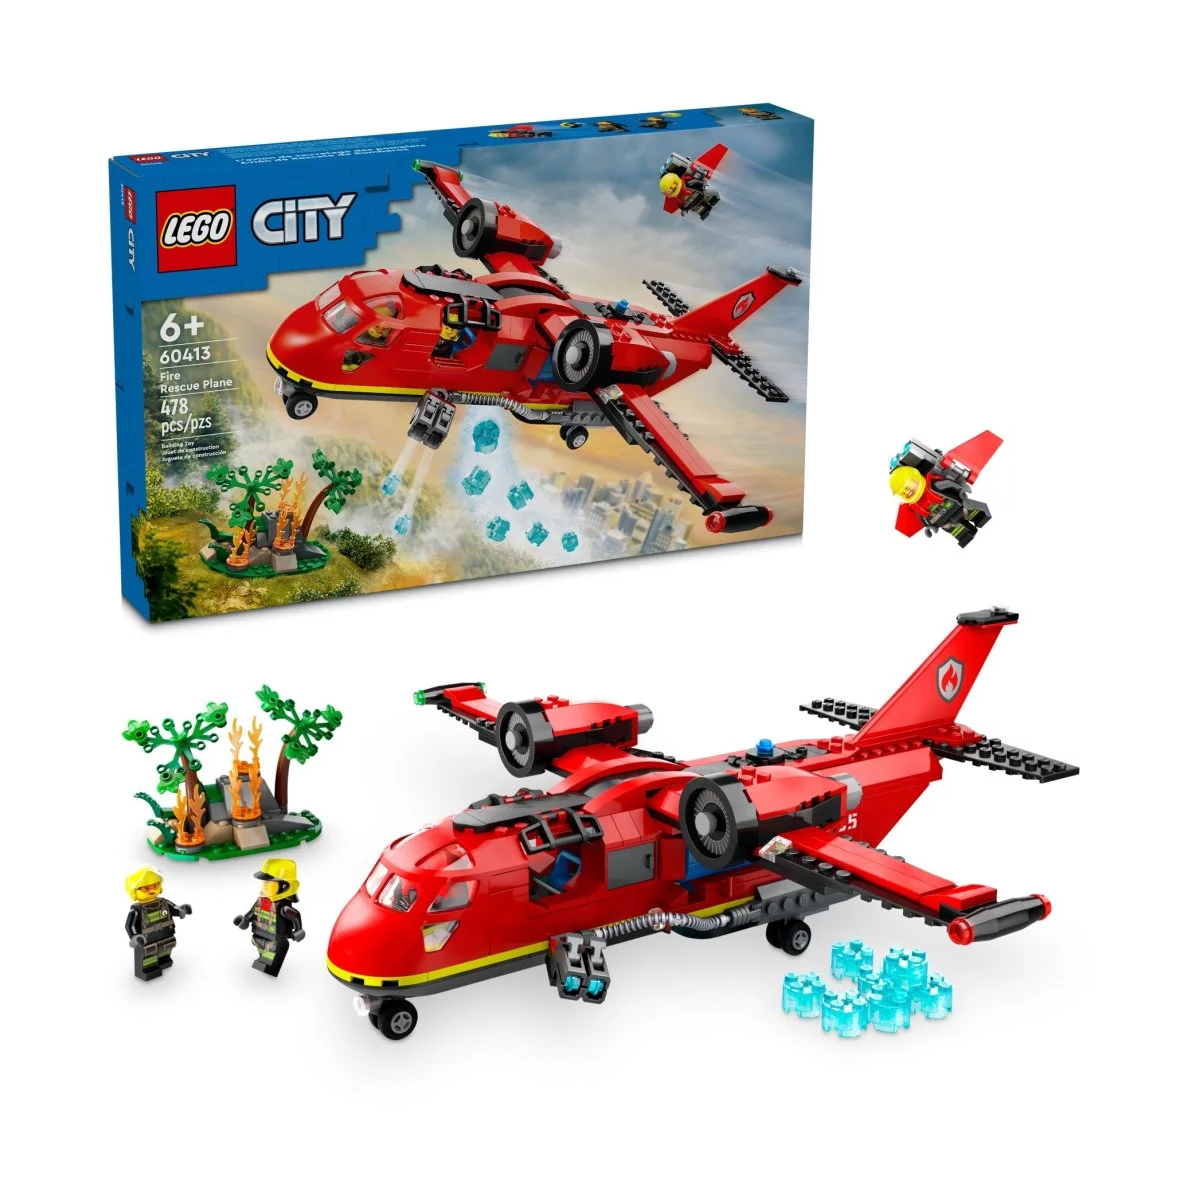 Конструктор Lego City Fire Rescue Plane 60413, 478 деталей цена и фото